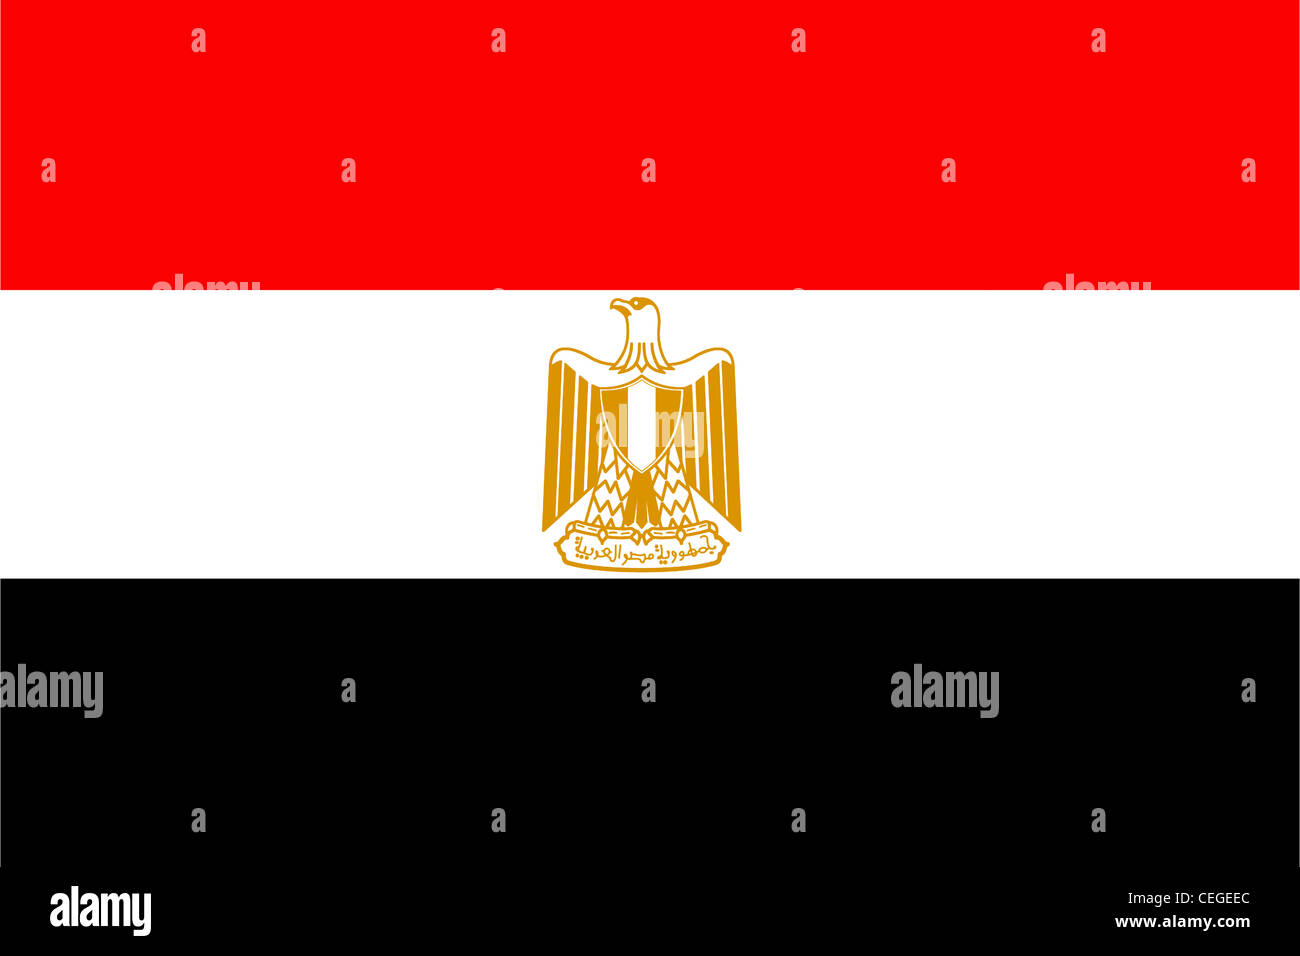 La bandera nacional de la República Árabe de Egipto. Foto de stock